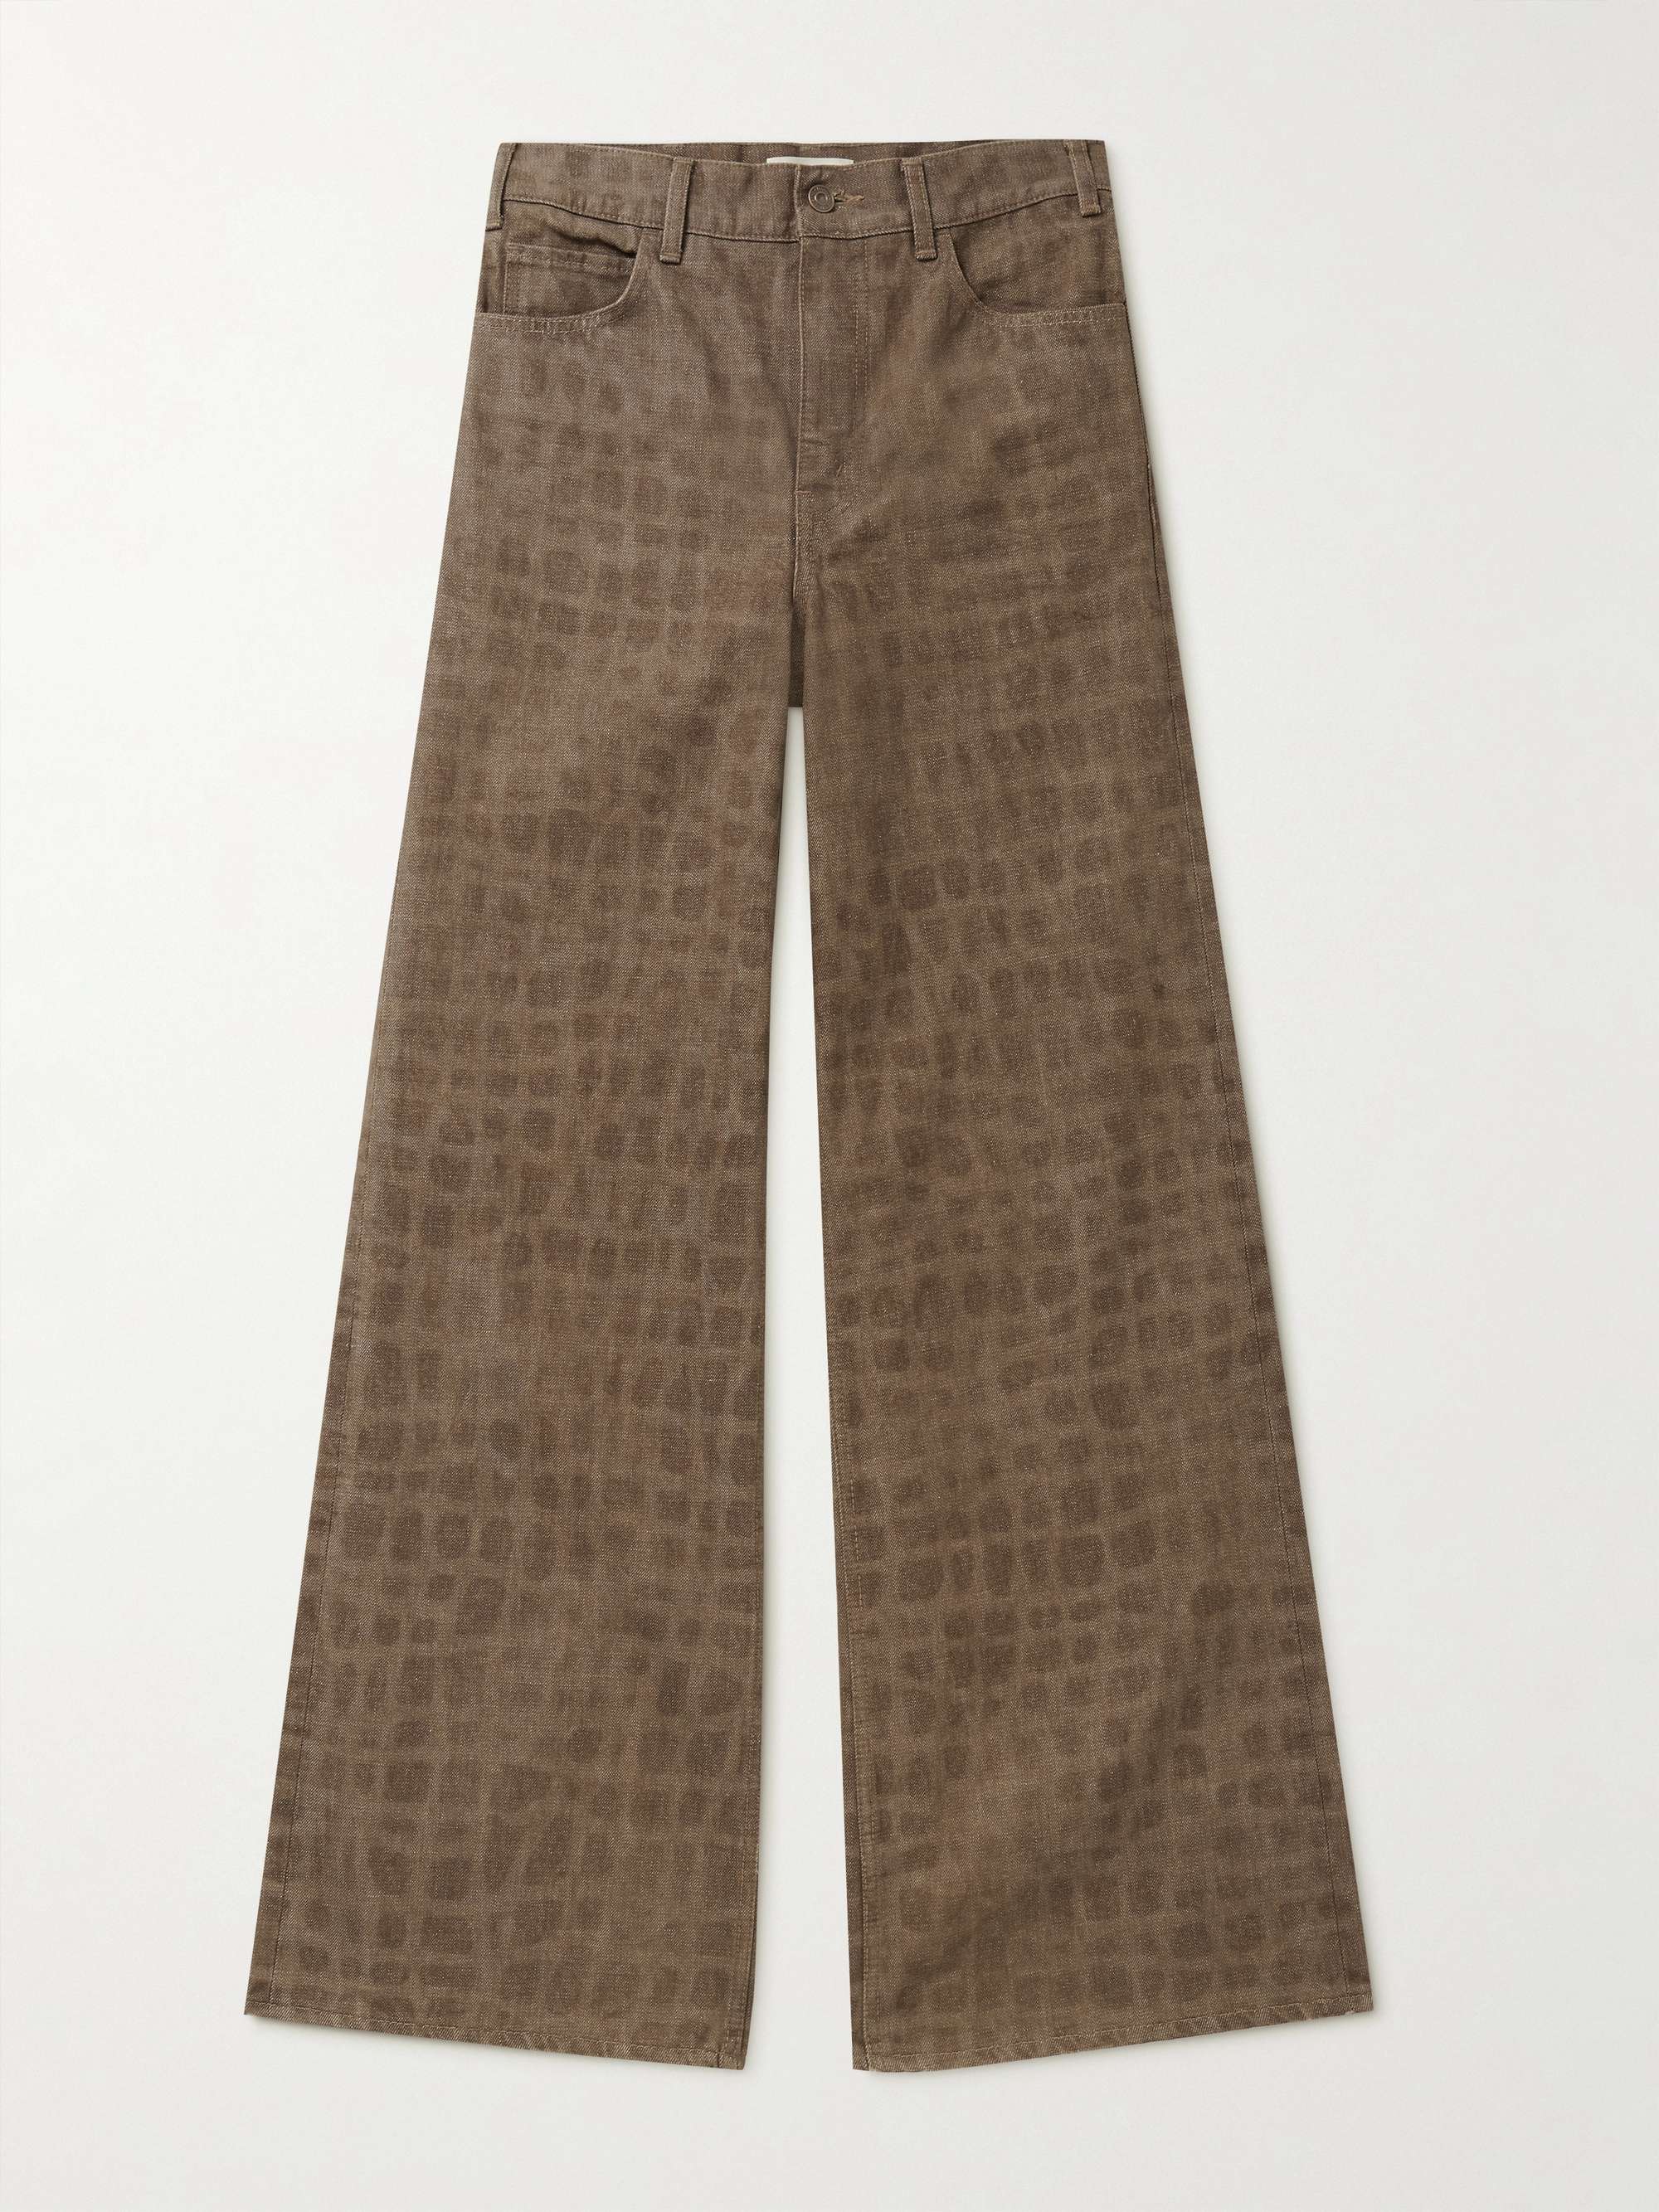 셀린느 옴므 부츠컷 데님 진 CELINE HOMME Bootcut Crocodile-Print Jeans,Brown